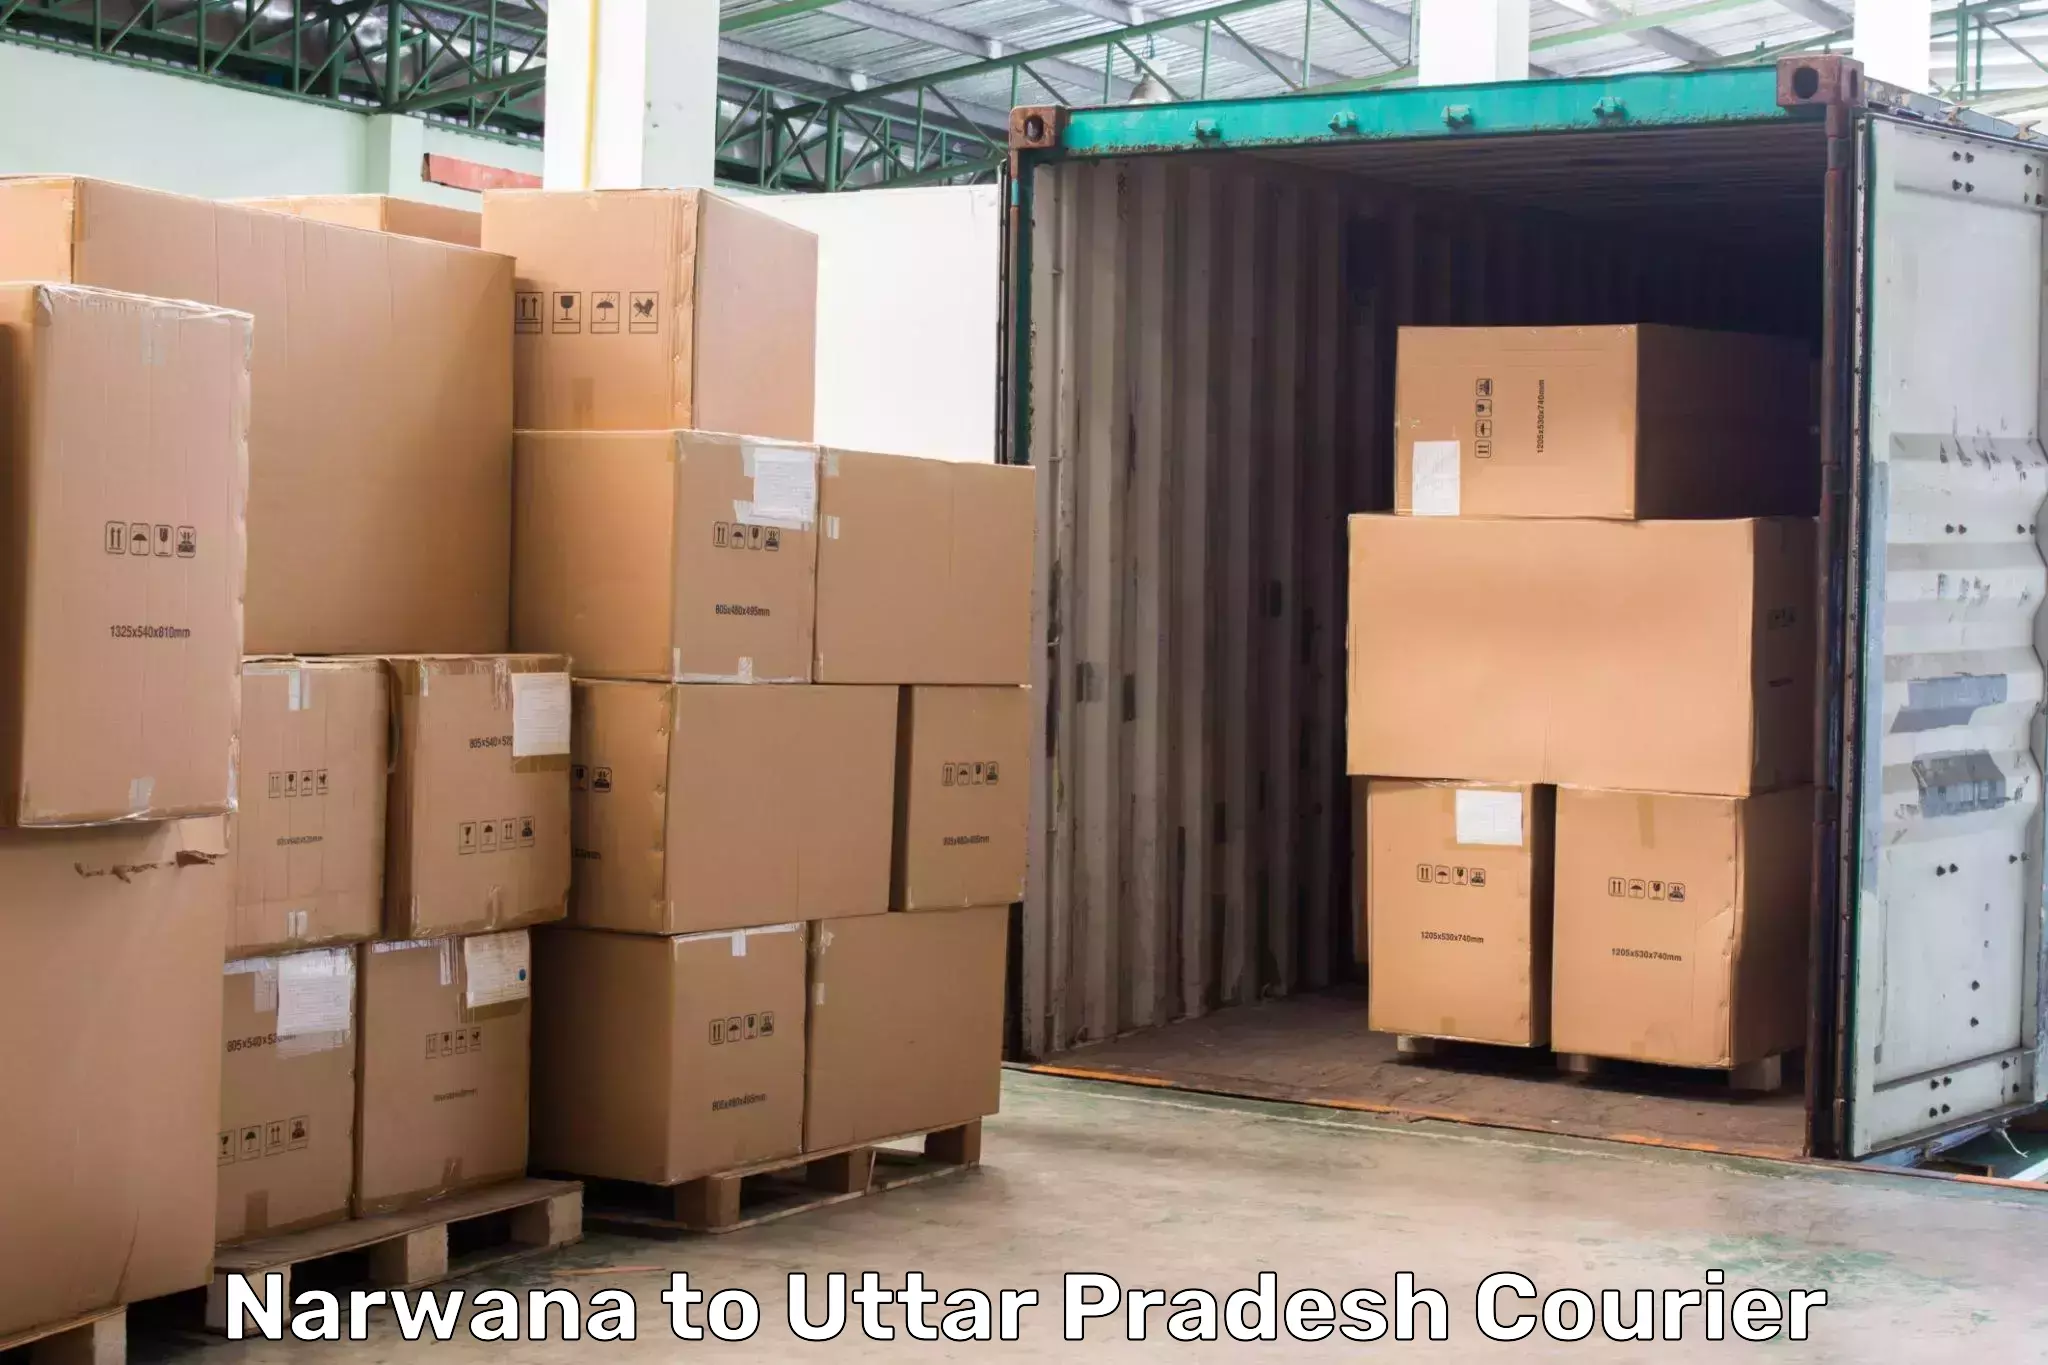 Express delivery capabilities Narwana to Varanasi